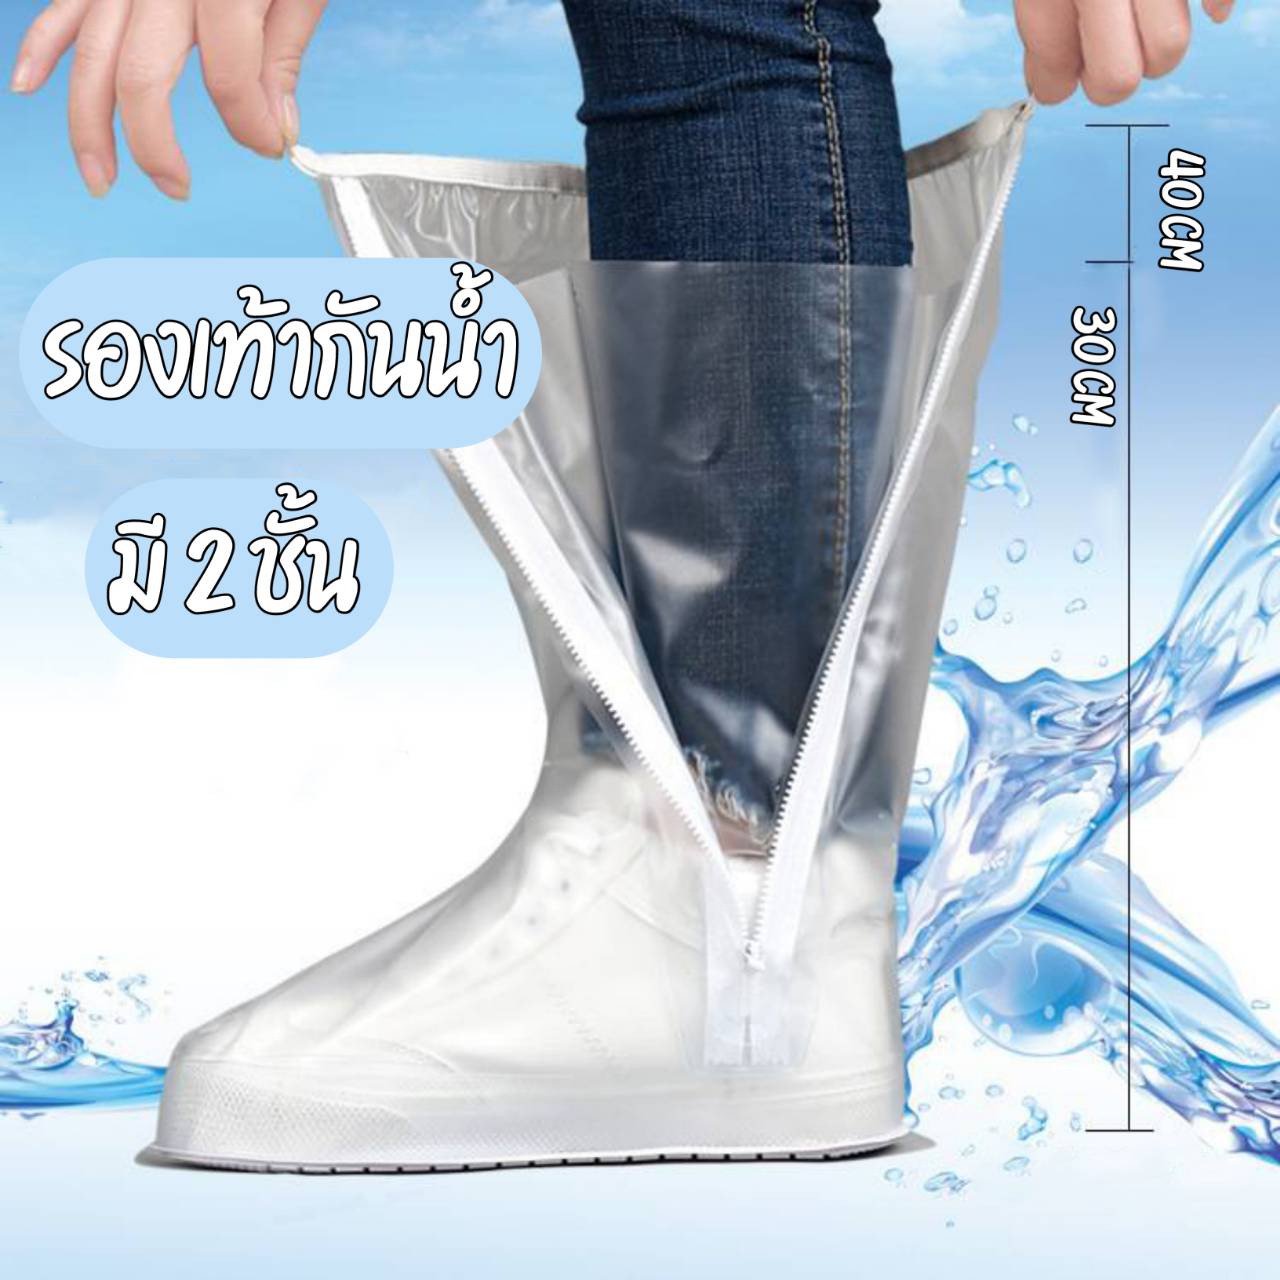 ส่งไวไม่ต้องรอ!!! รองเท้ากันน้ำ 2 ชั้น รองเท้ากันฝน ผ้าคุมรองเท้ากันน้ำ ผ้าคุมกันน้ำสีใส ถุงสวมรองเท้ากันน้ำ ถุงสวมรองเท้ากันฝน